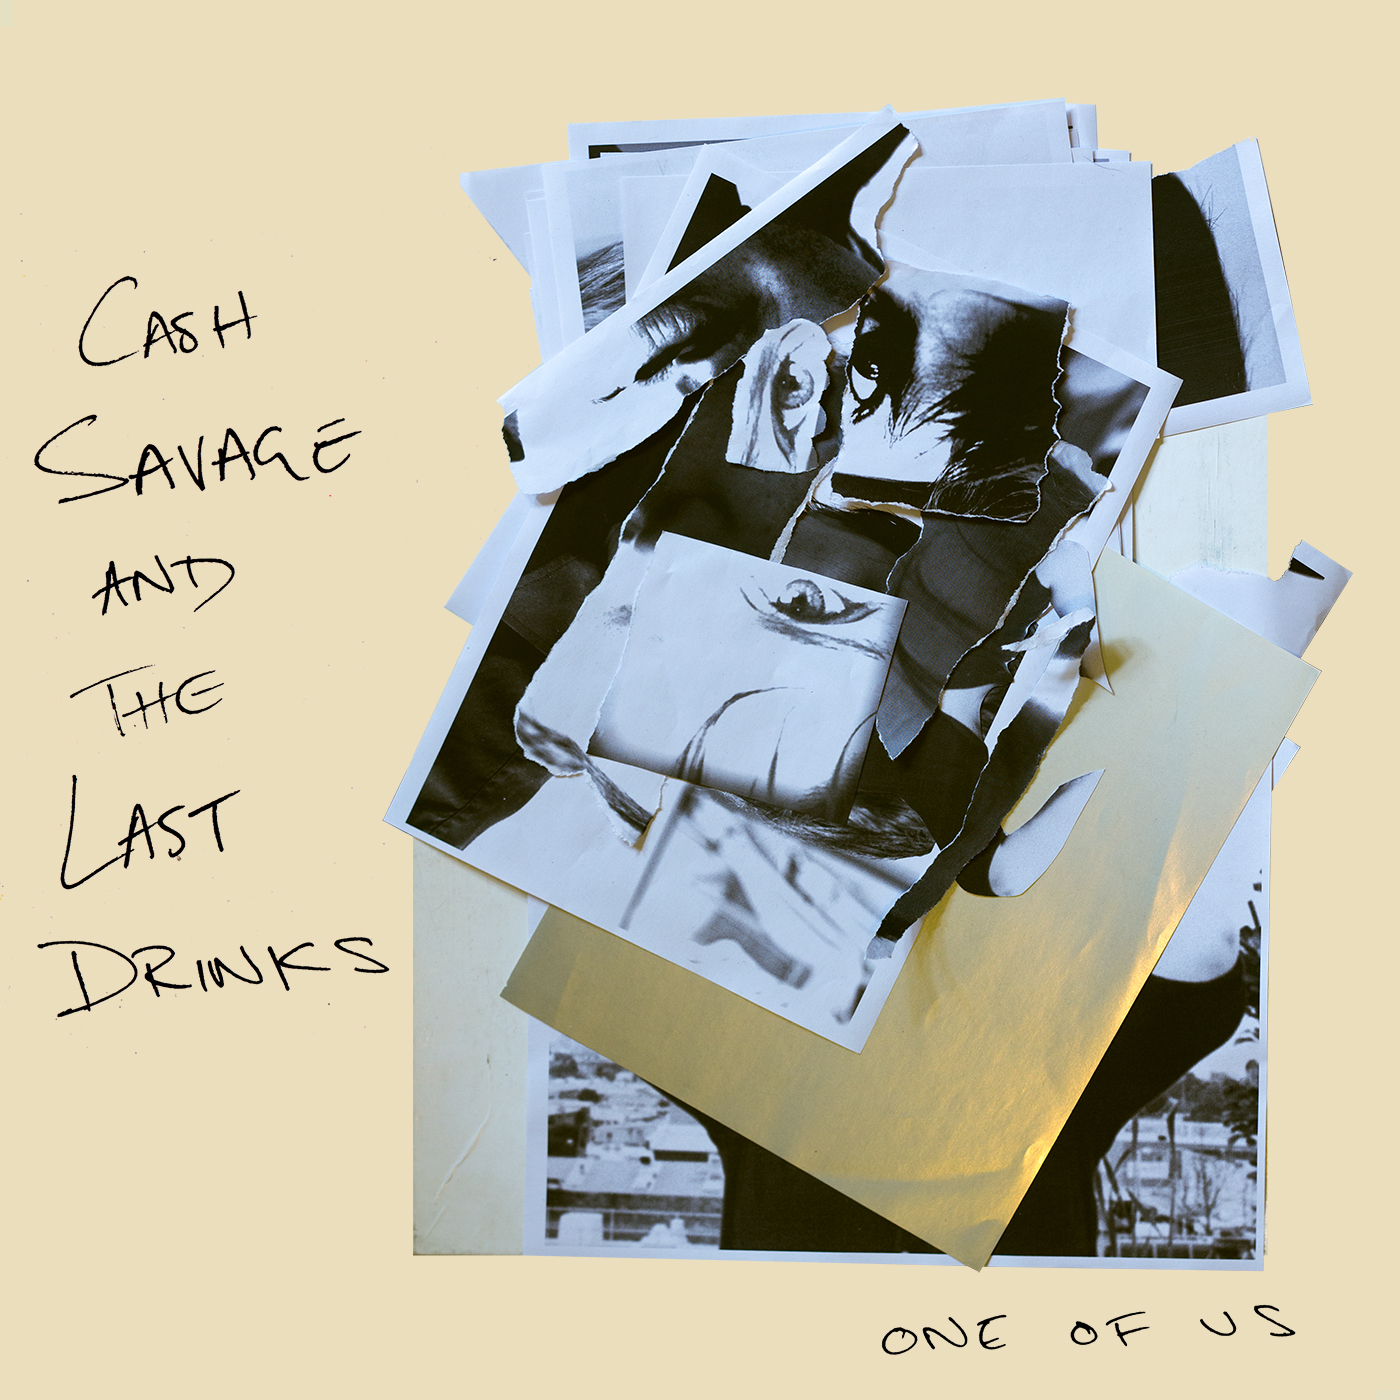 One of Us – CD & Vinyl pre-sale